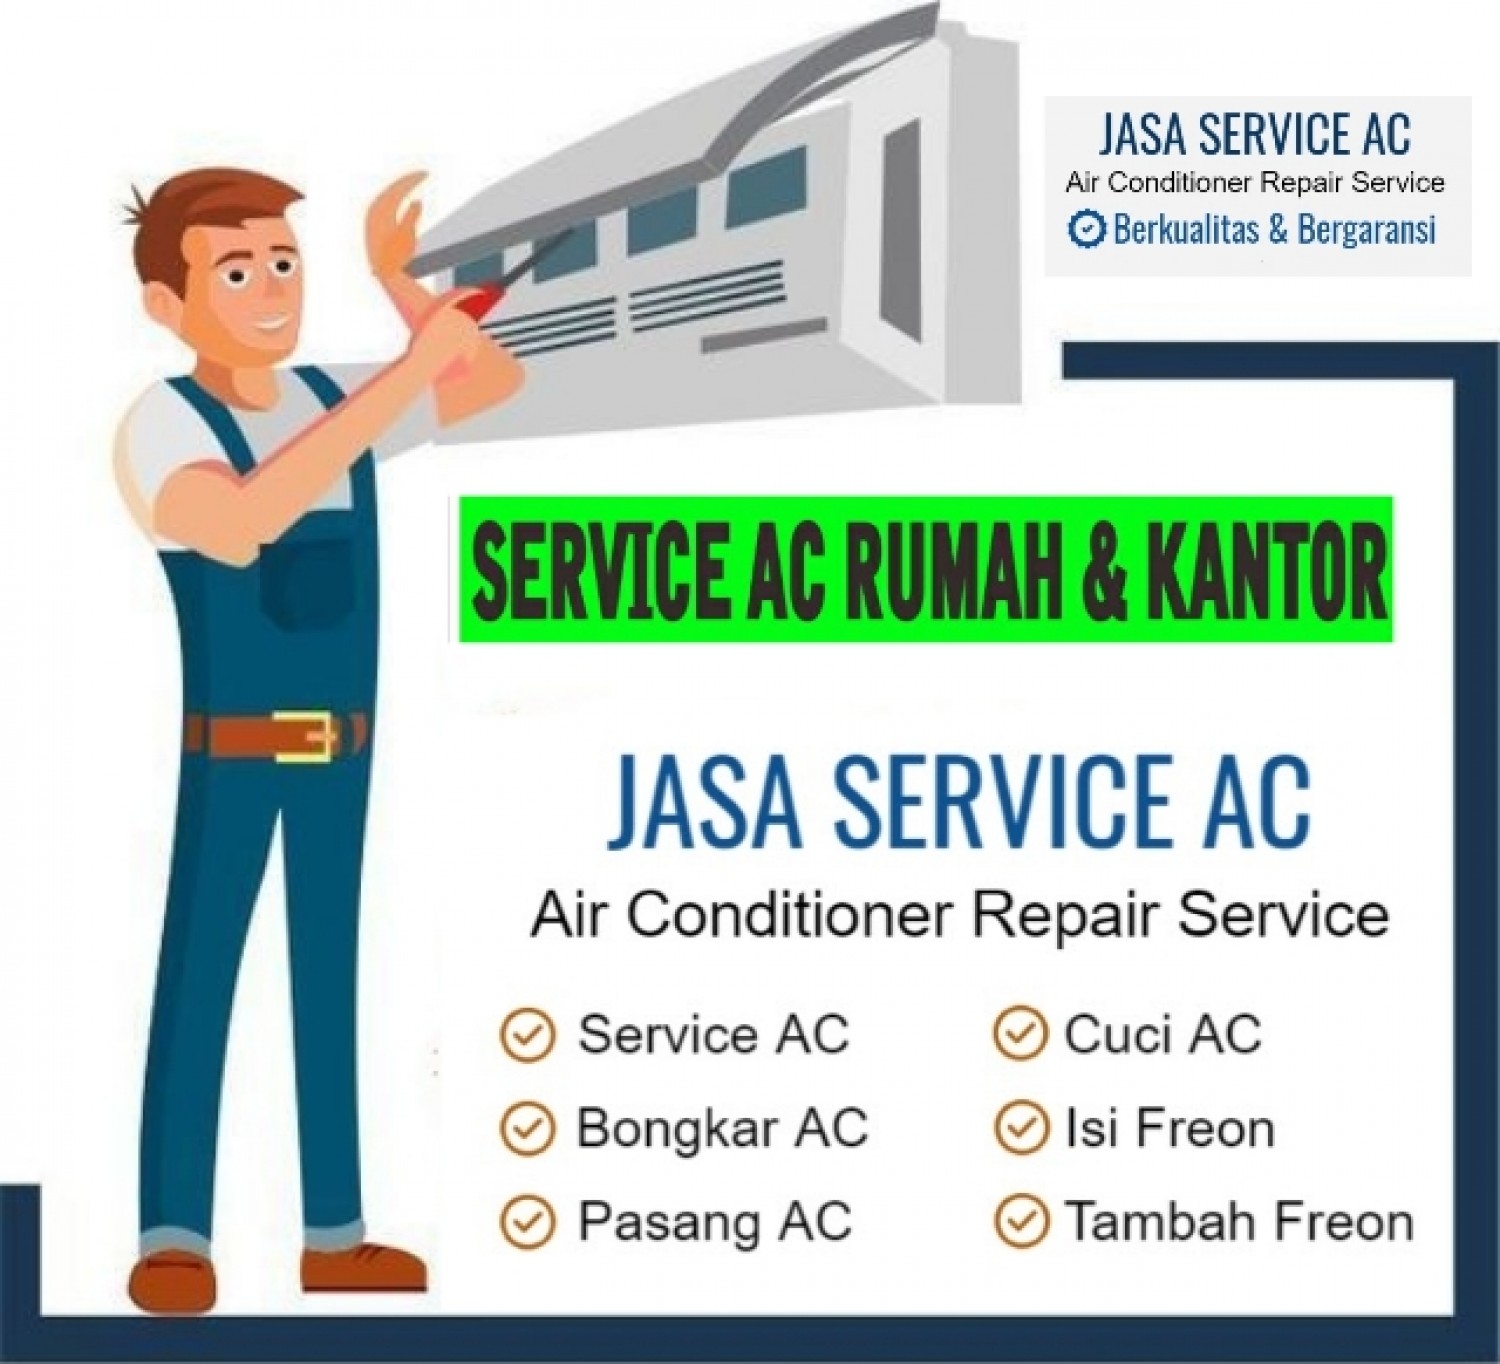 Jasa Service AC Kota Banjarmasin